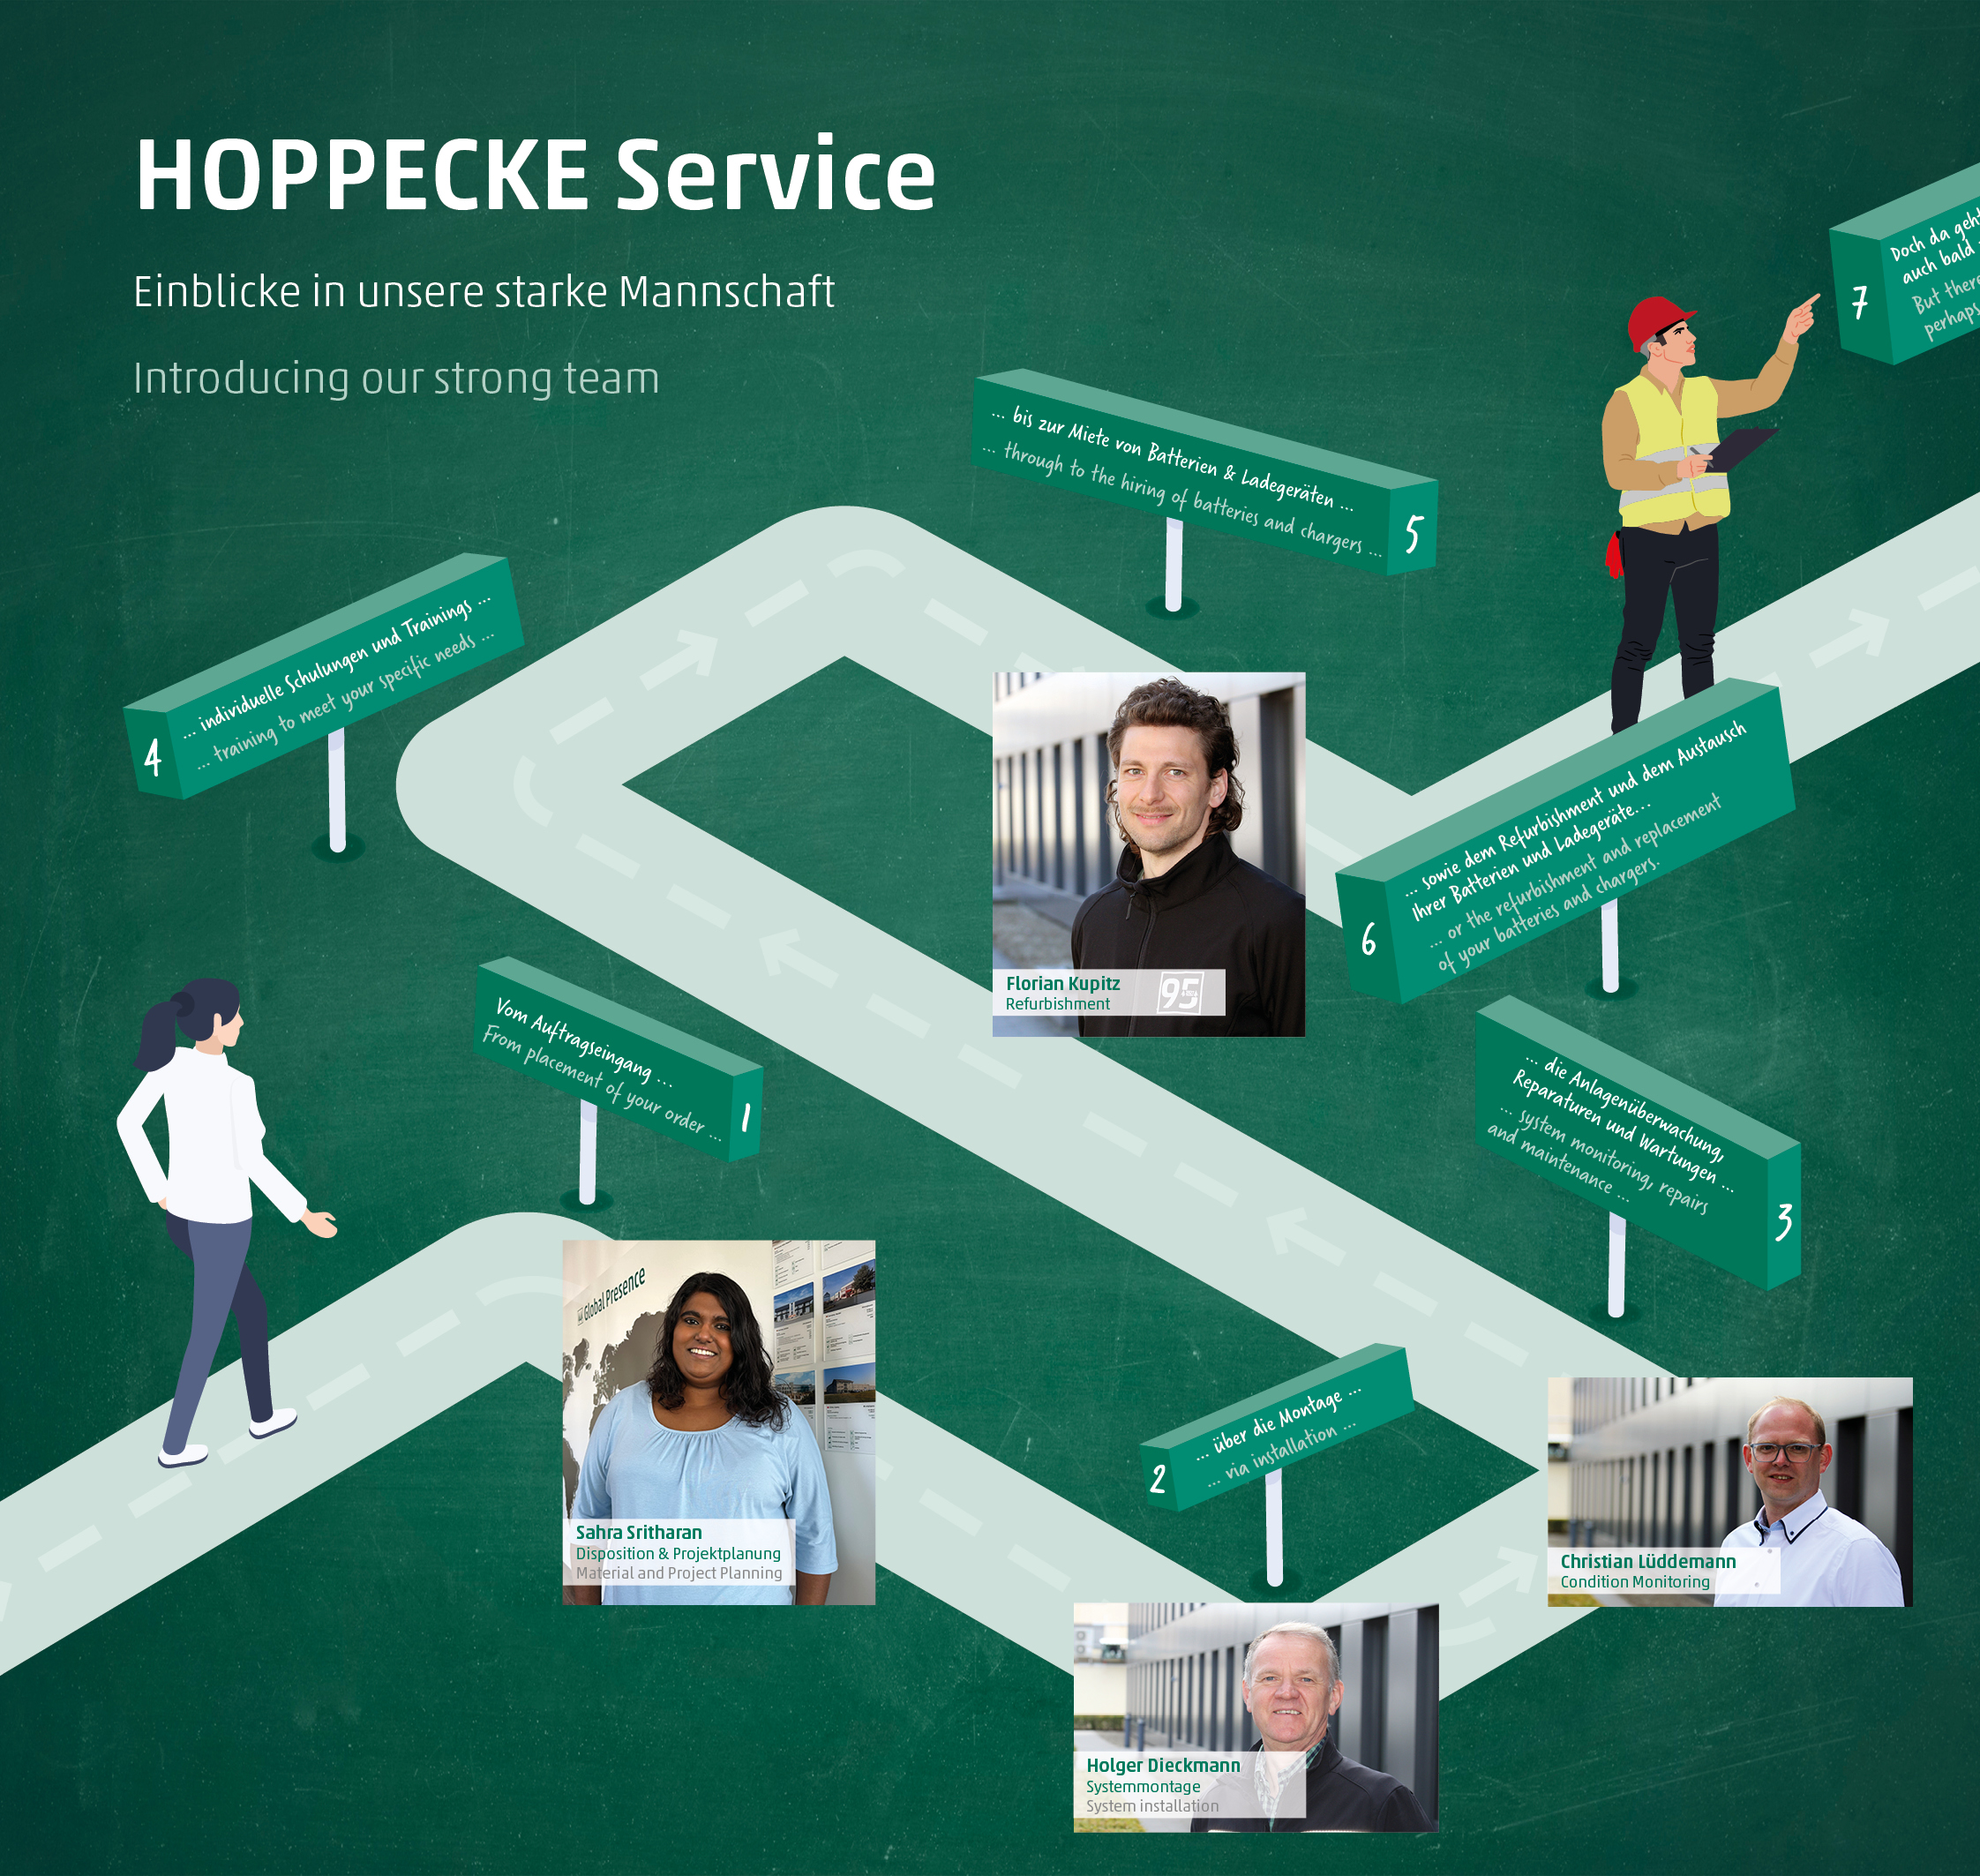 HOPPECKE Service - Einblicke in unsere starke Mannschaft - learn more